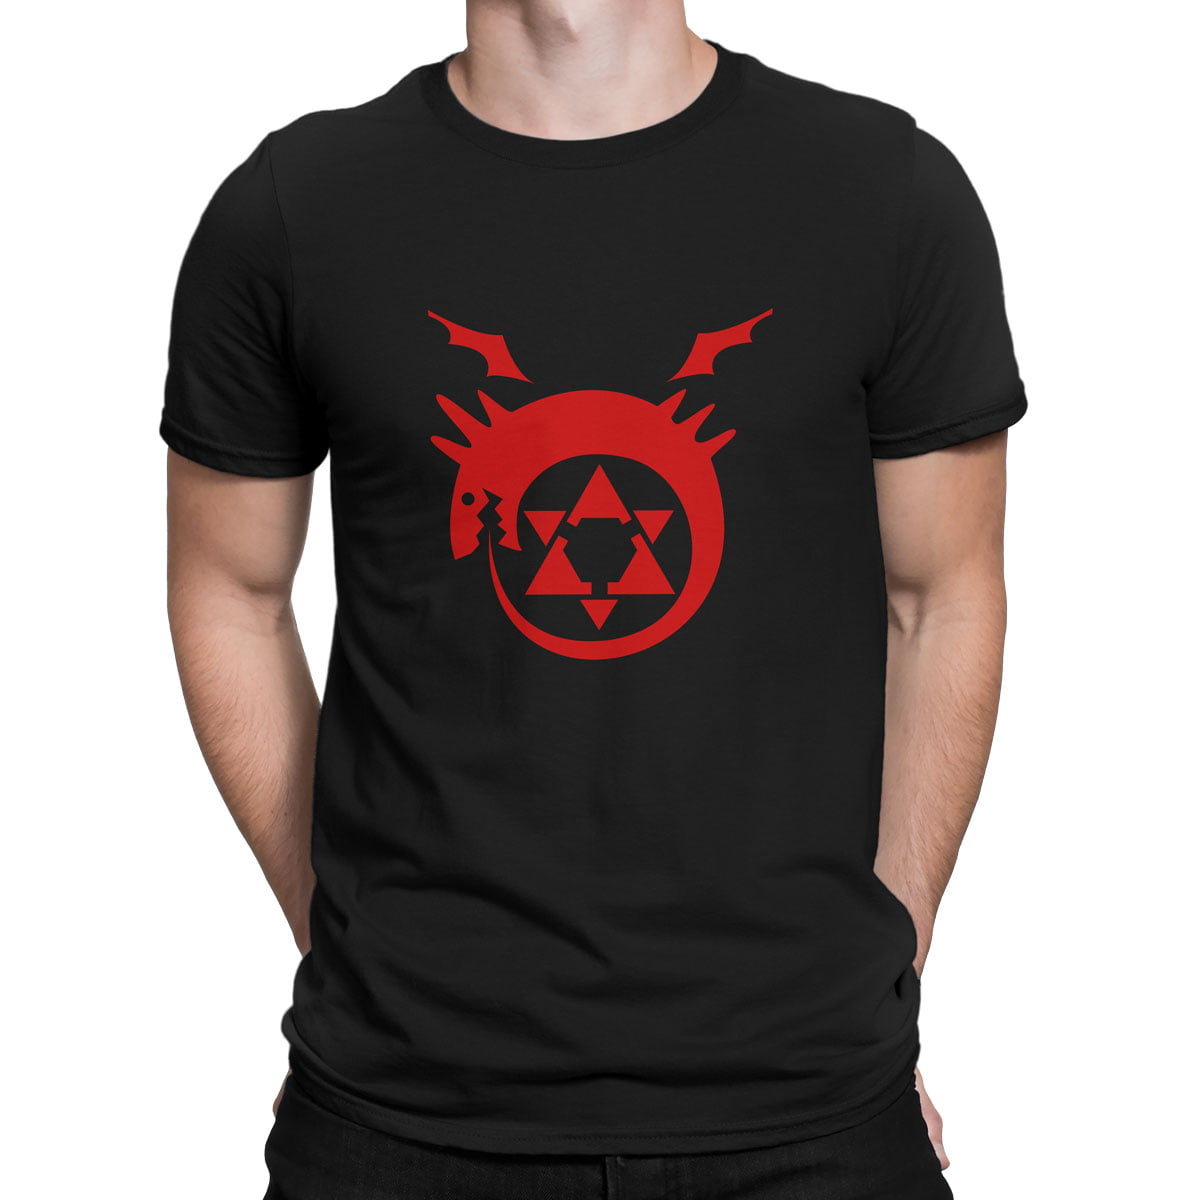 Fma logo tisort erkek s - fullmetal alchemist baskılı erkek t-shirt - figurex